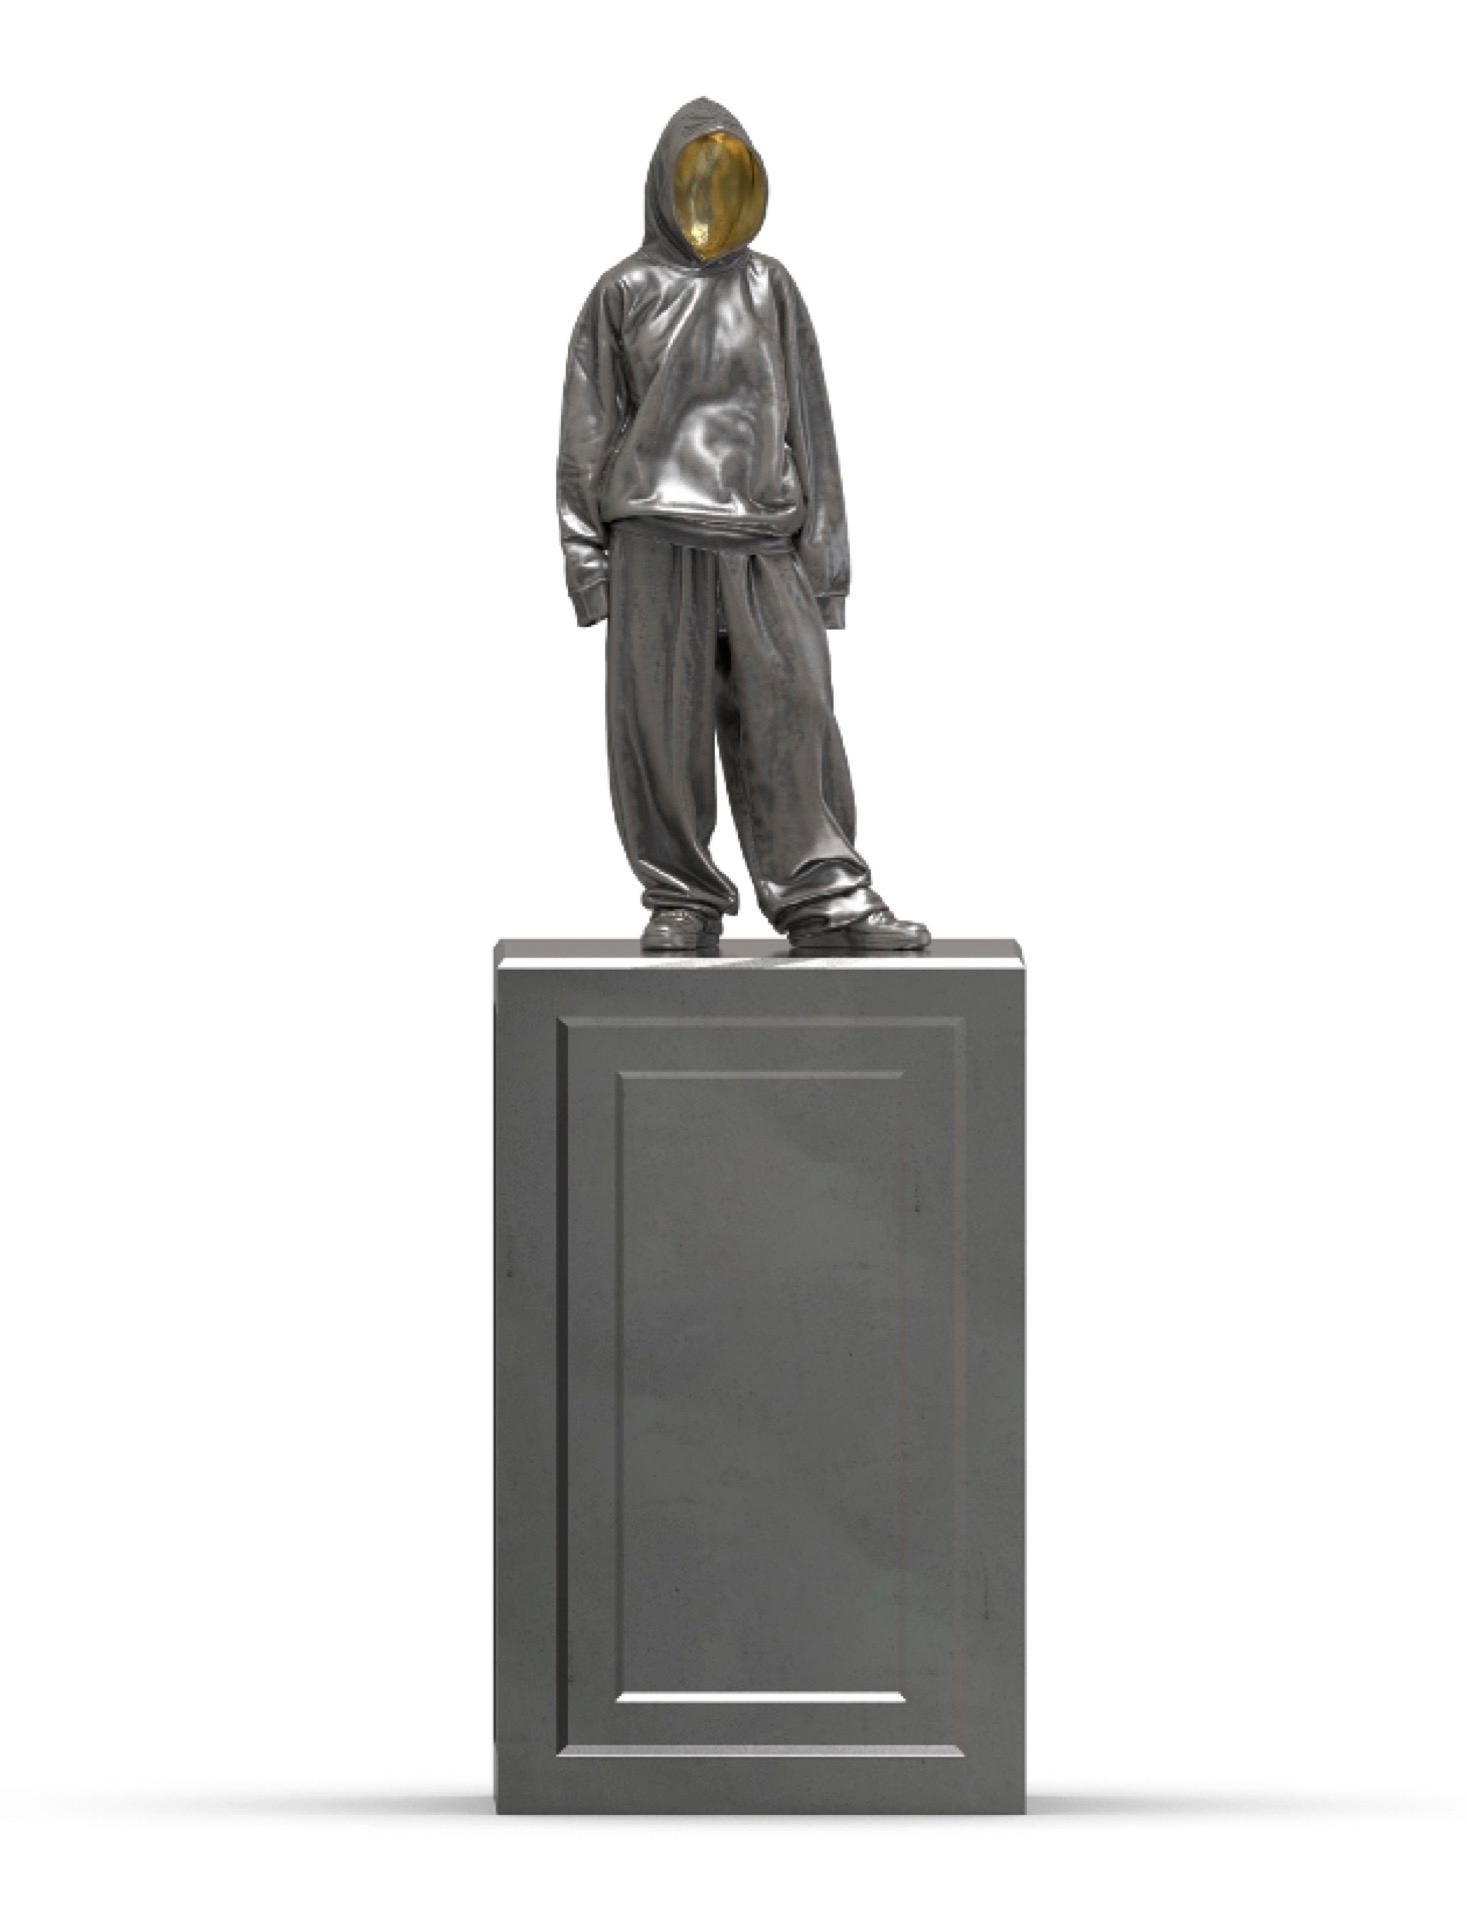 „Peaches“ Bronzeskulptur Auflage 1/8 von Huang Yulong

Größe der Figur: 37" x 16" x 8" Zoll
Standgröße:  35" x 22" x 22" Zoll

ÜBER DEN KÜNSTLER
Huang Yulong wurde 1983 in der Provinz Anhui, China, geboren. Im Jahr 2007 schloss er sein Studium am